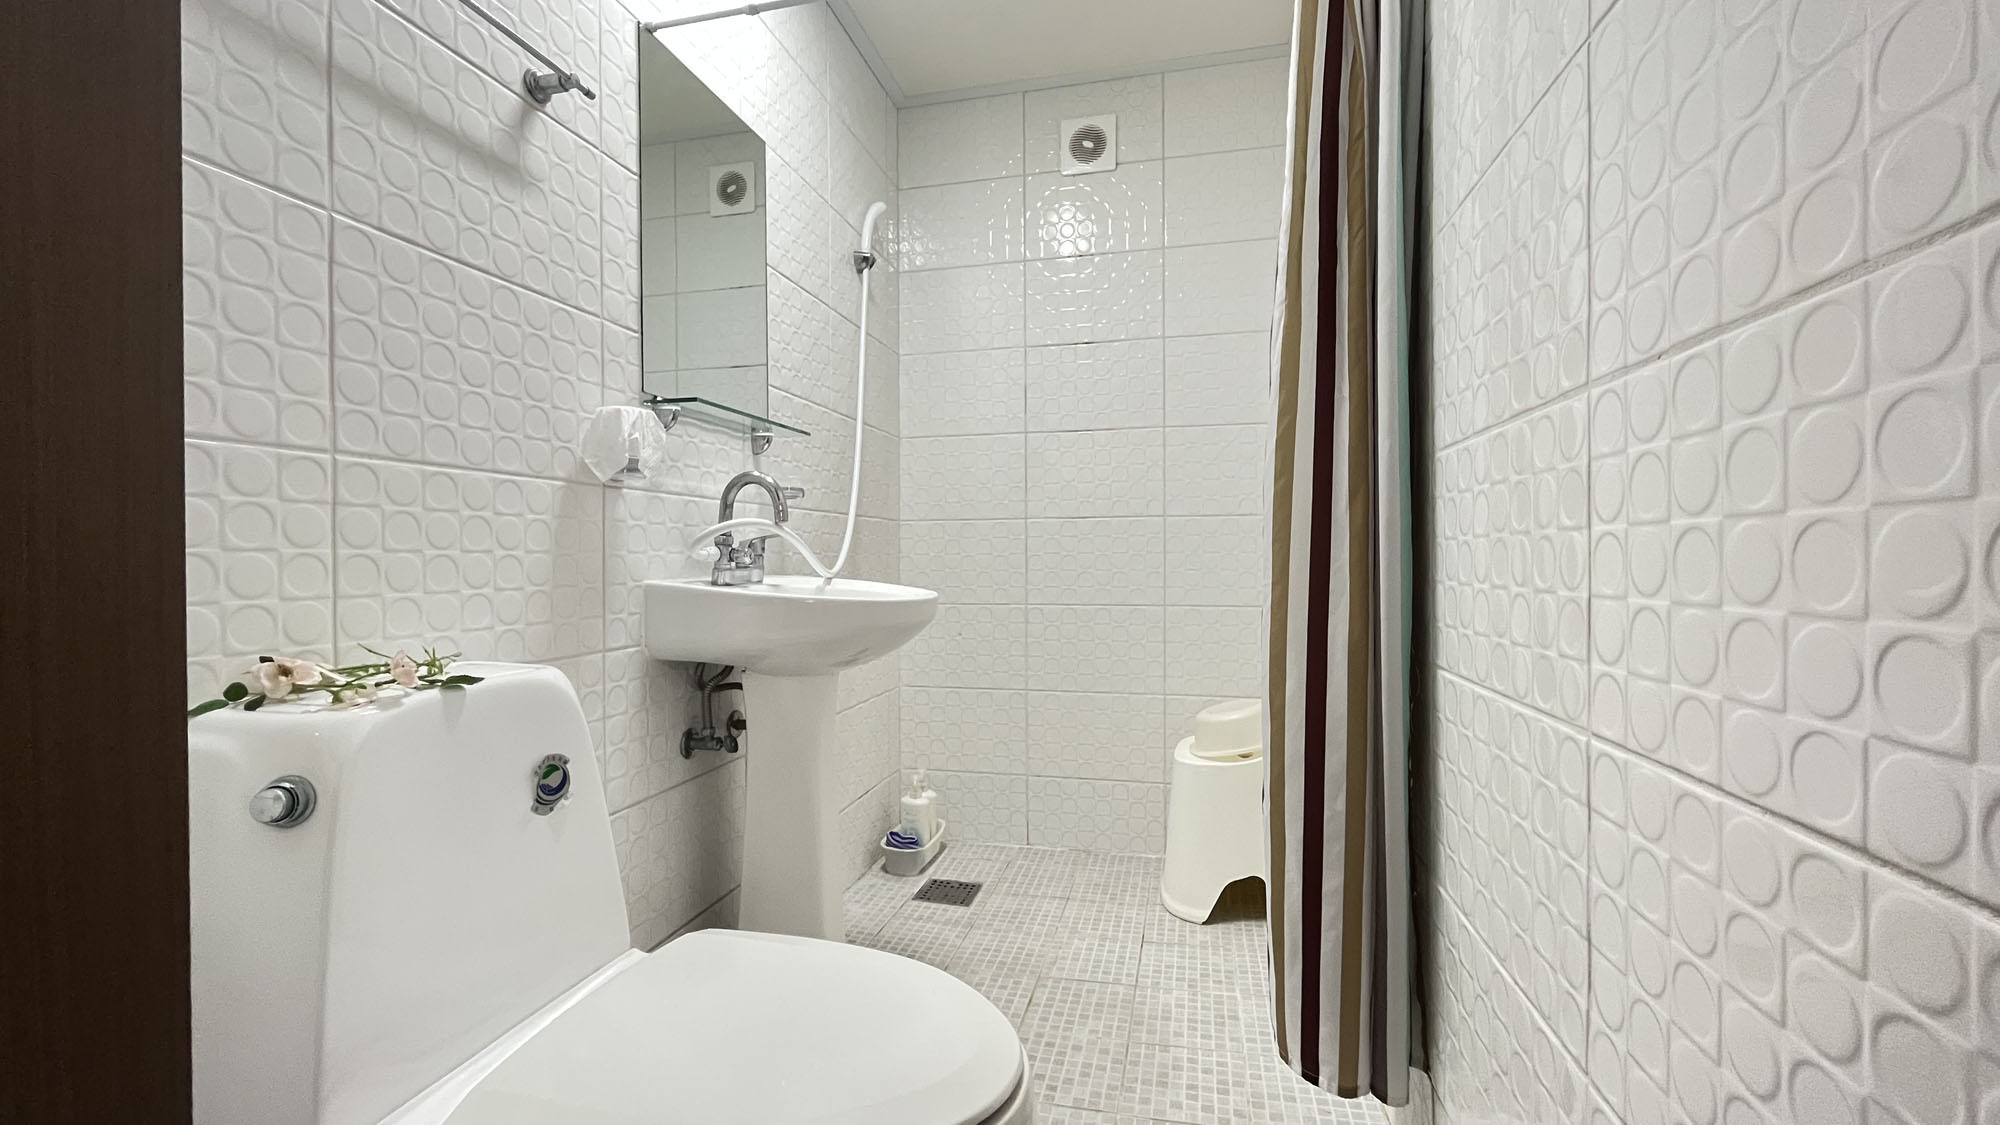 【客室】ダブルシャワー・トイレ付きシャワーと洗面とトイレがワンセットルーム*